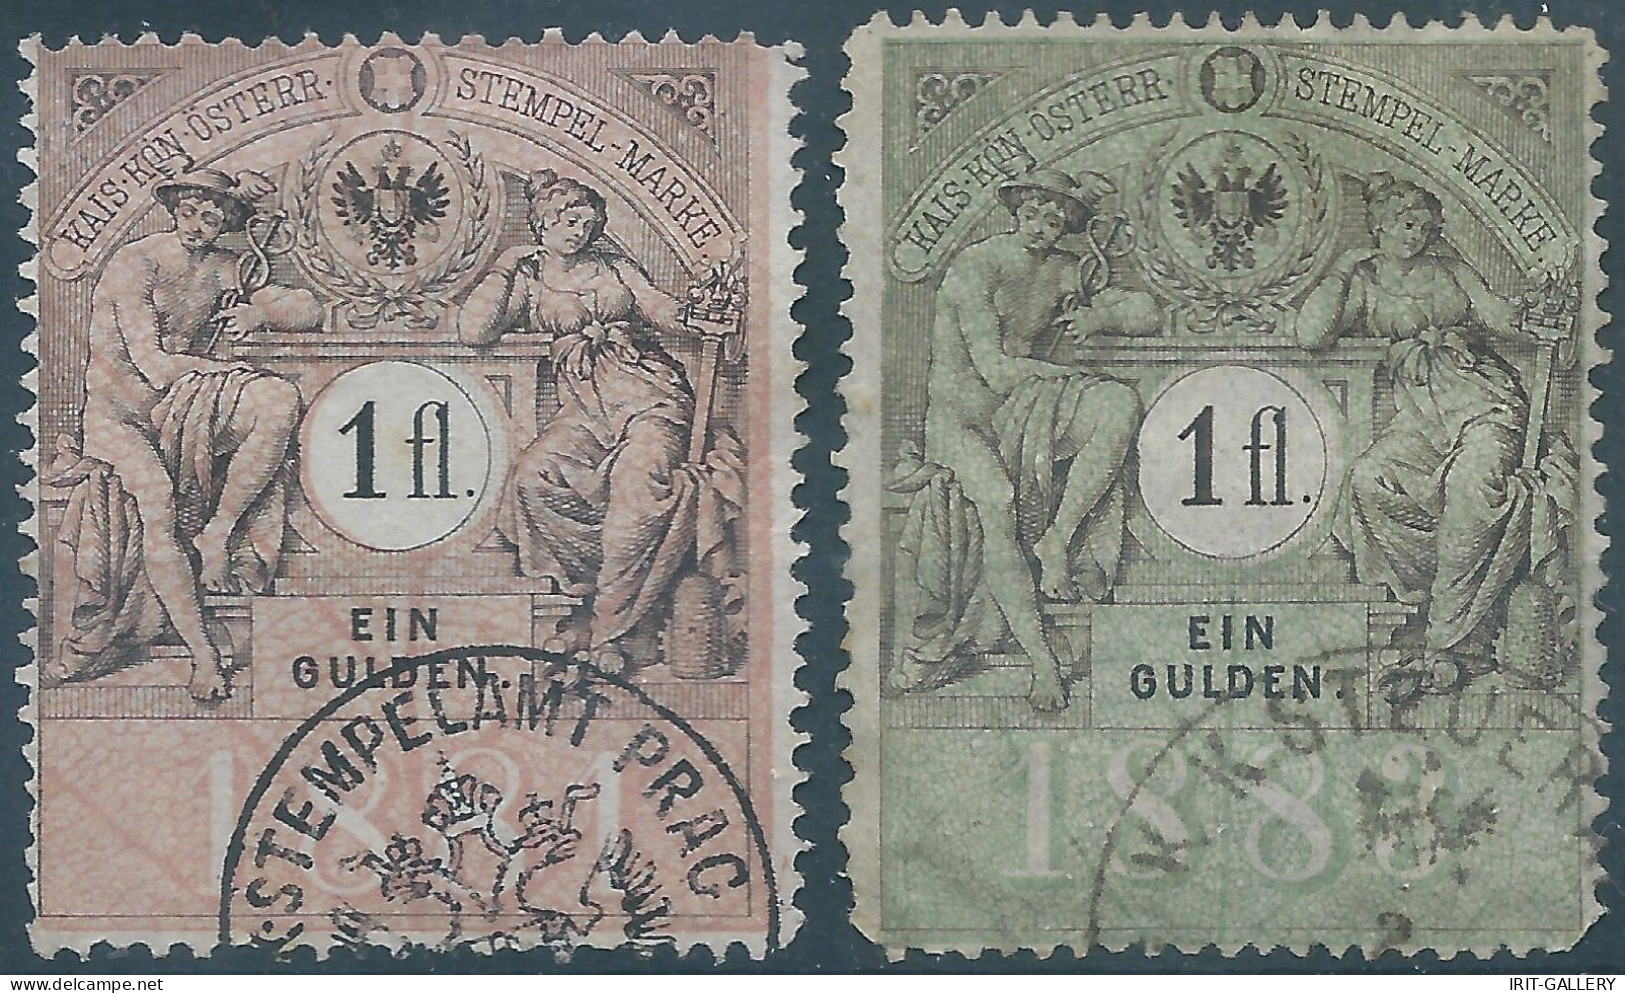 AUSTRIA-L'AUTRICHE-ÖSTERREICH,1881-1883 KAIS KÖN ÖSTERR STEMPELMARKE,Revenue Stamps Tax Fiscal,1fl-EIN GULDEN - Fiscale Zegels